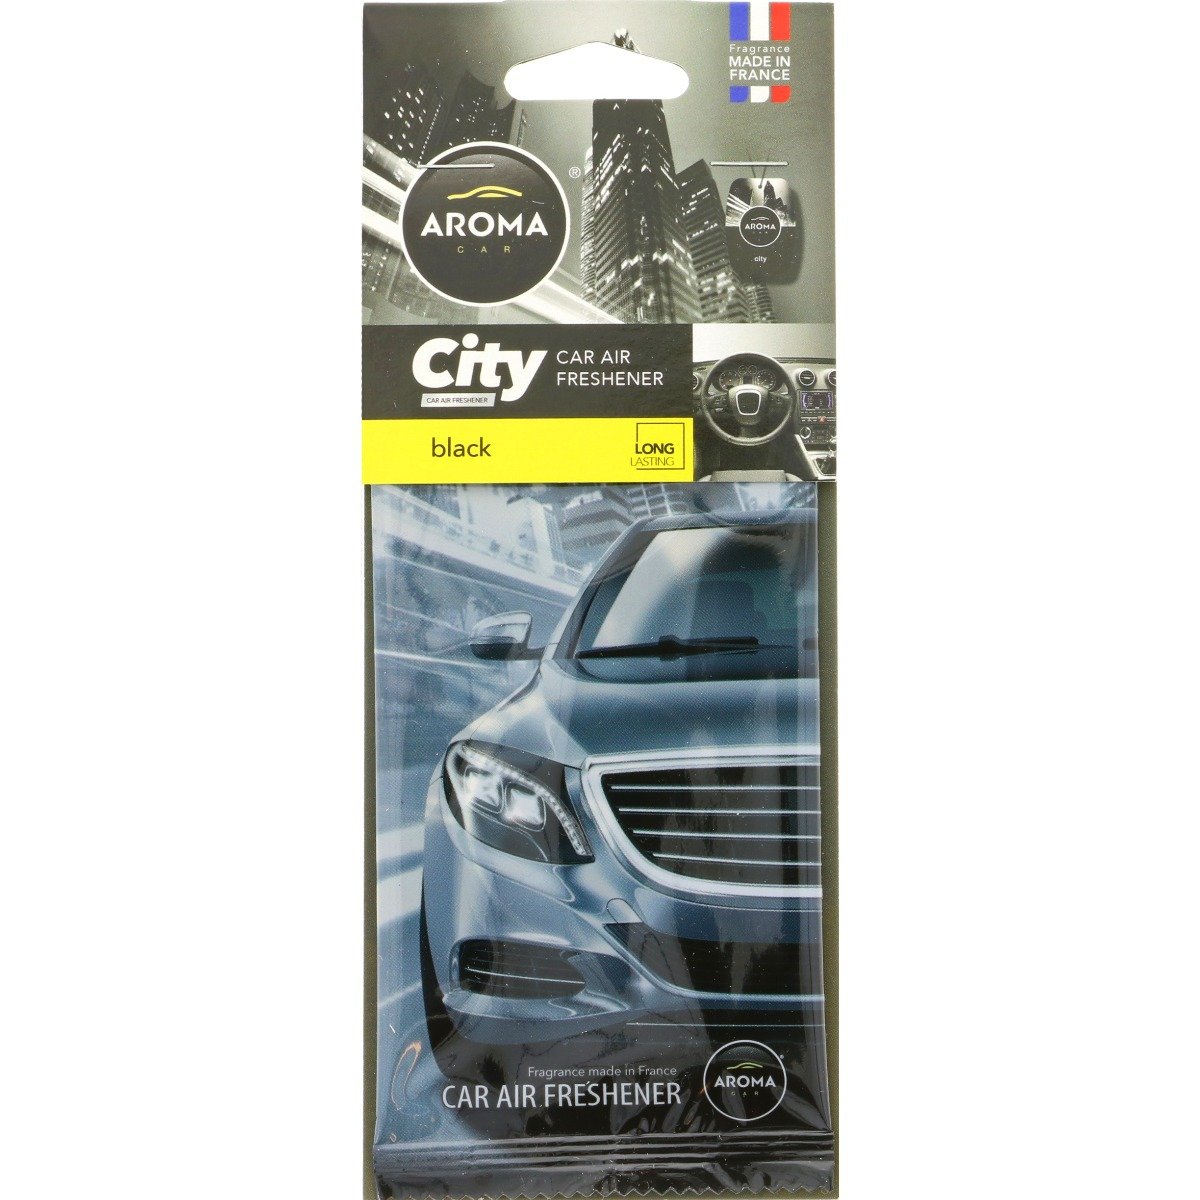 City Car Air Freshener - Black